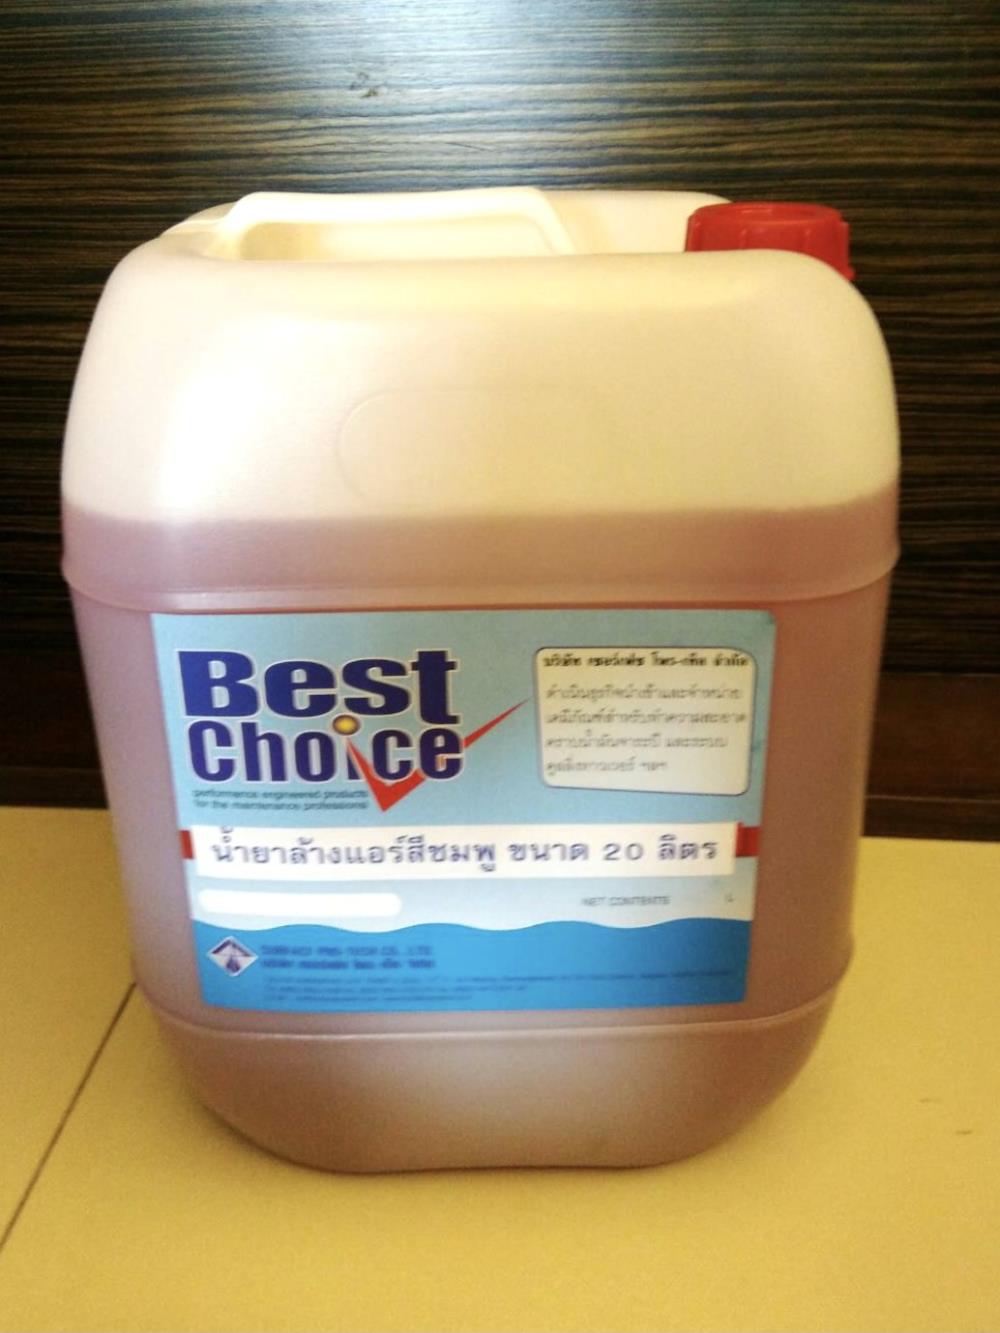 น้ำยาล้างแอร์ Best Choice Fin Coil น้ำยาล้างแอร์ เป็นน้ำยาสำหรับล้างทำความสะอาดคราบไขมัน ฝุ่นละออง